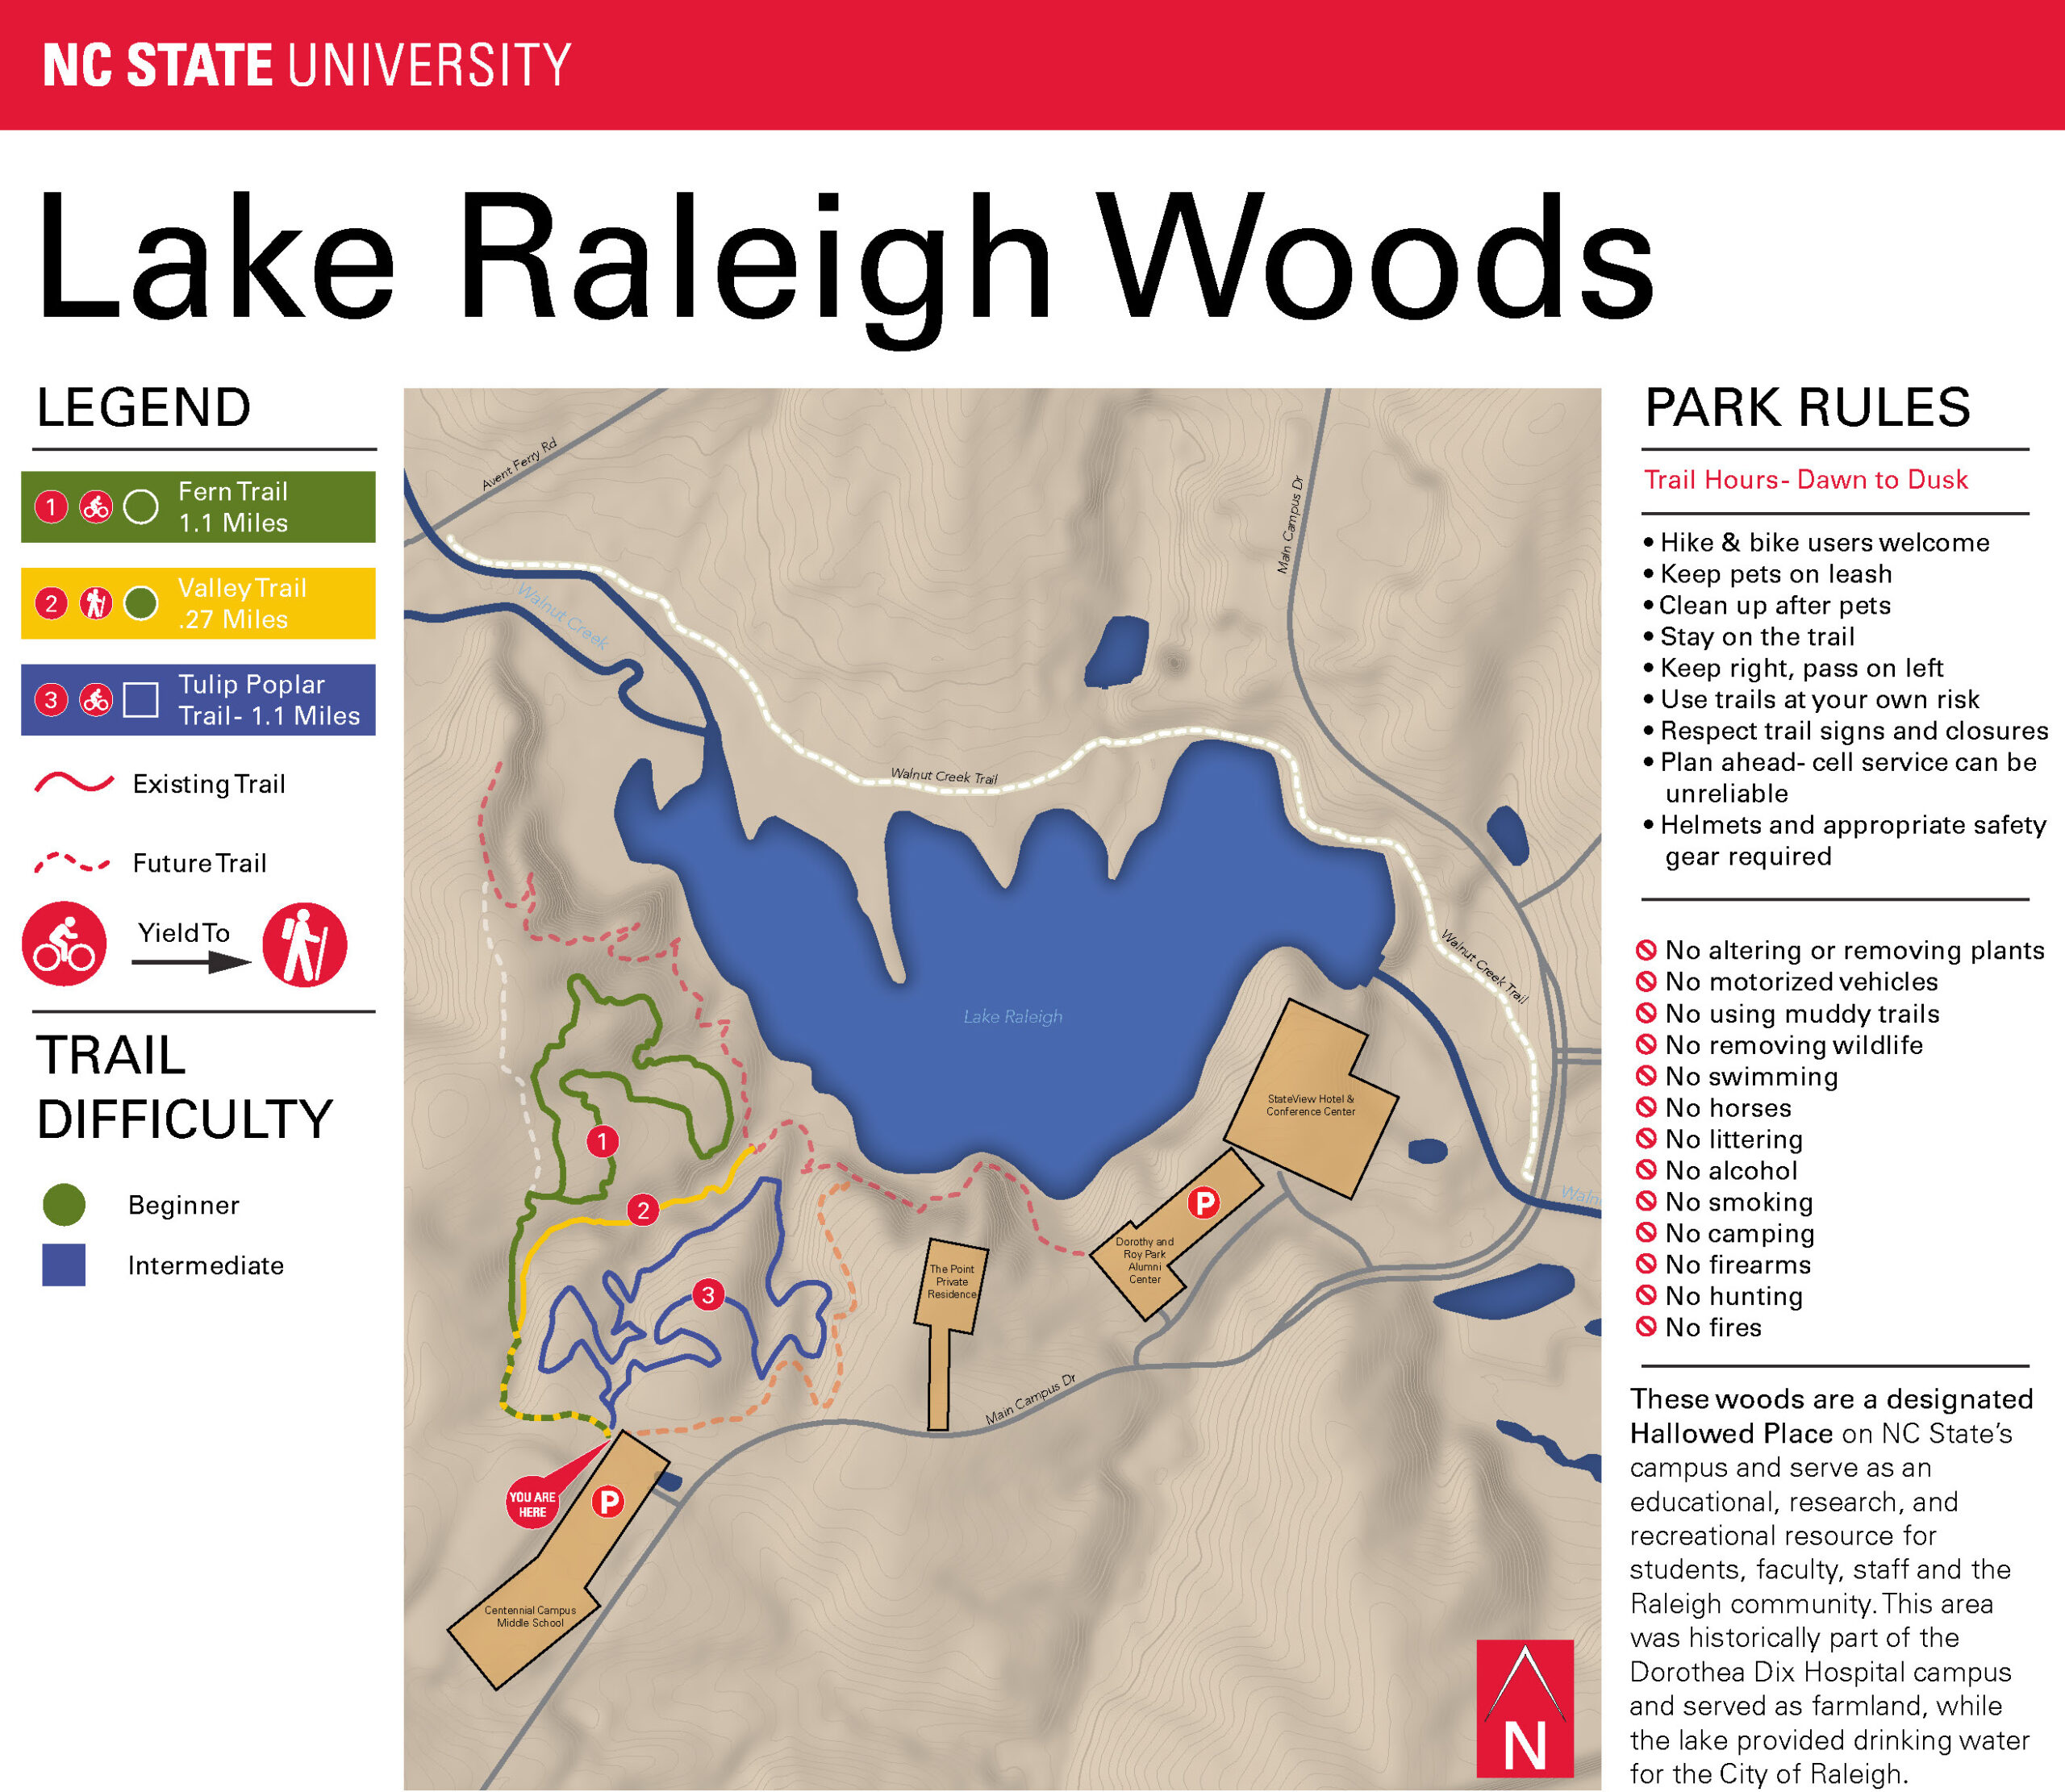 JPG of Lake Raleigh Woods map